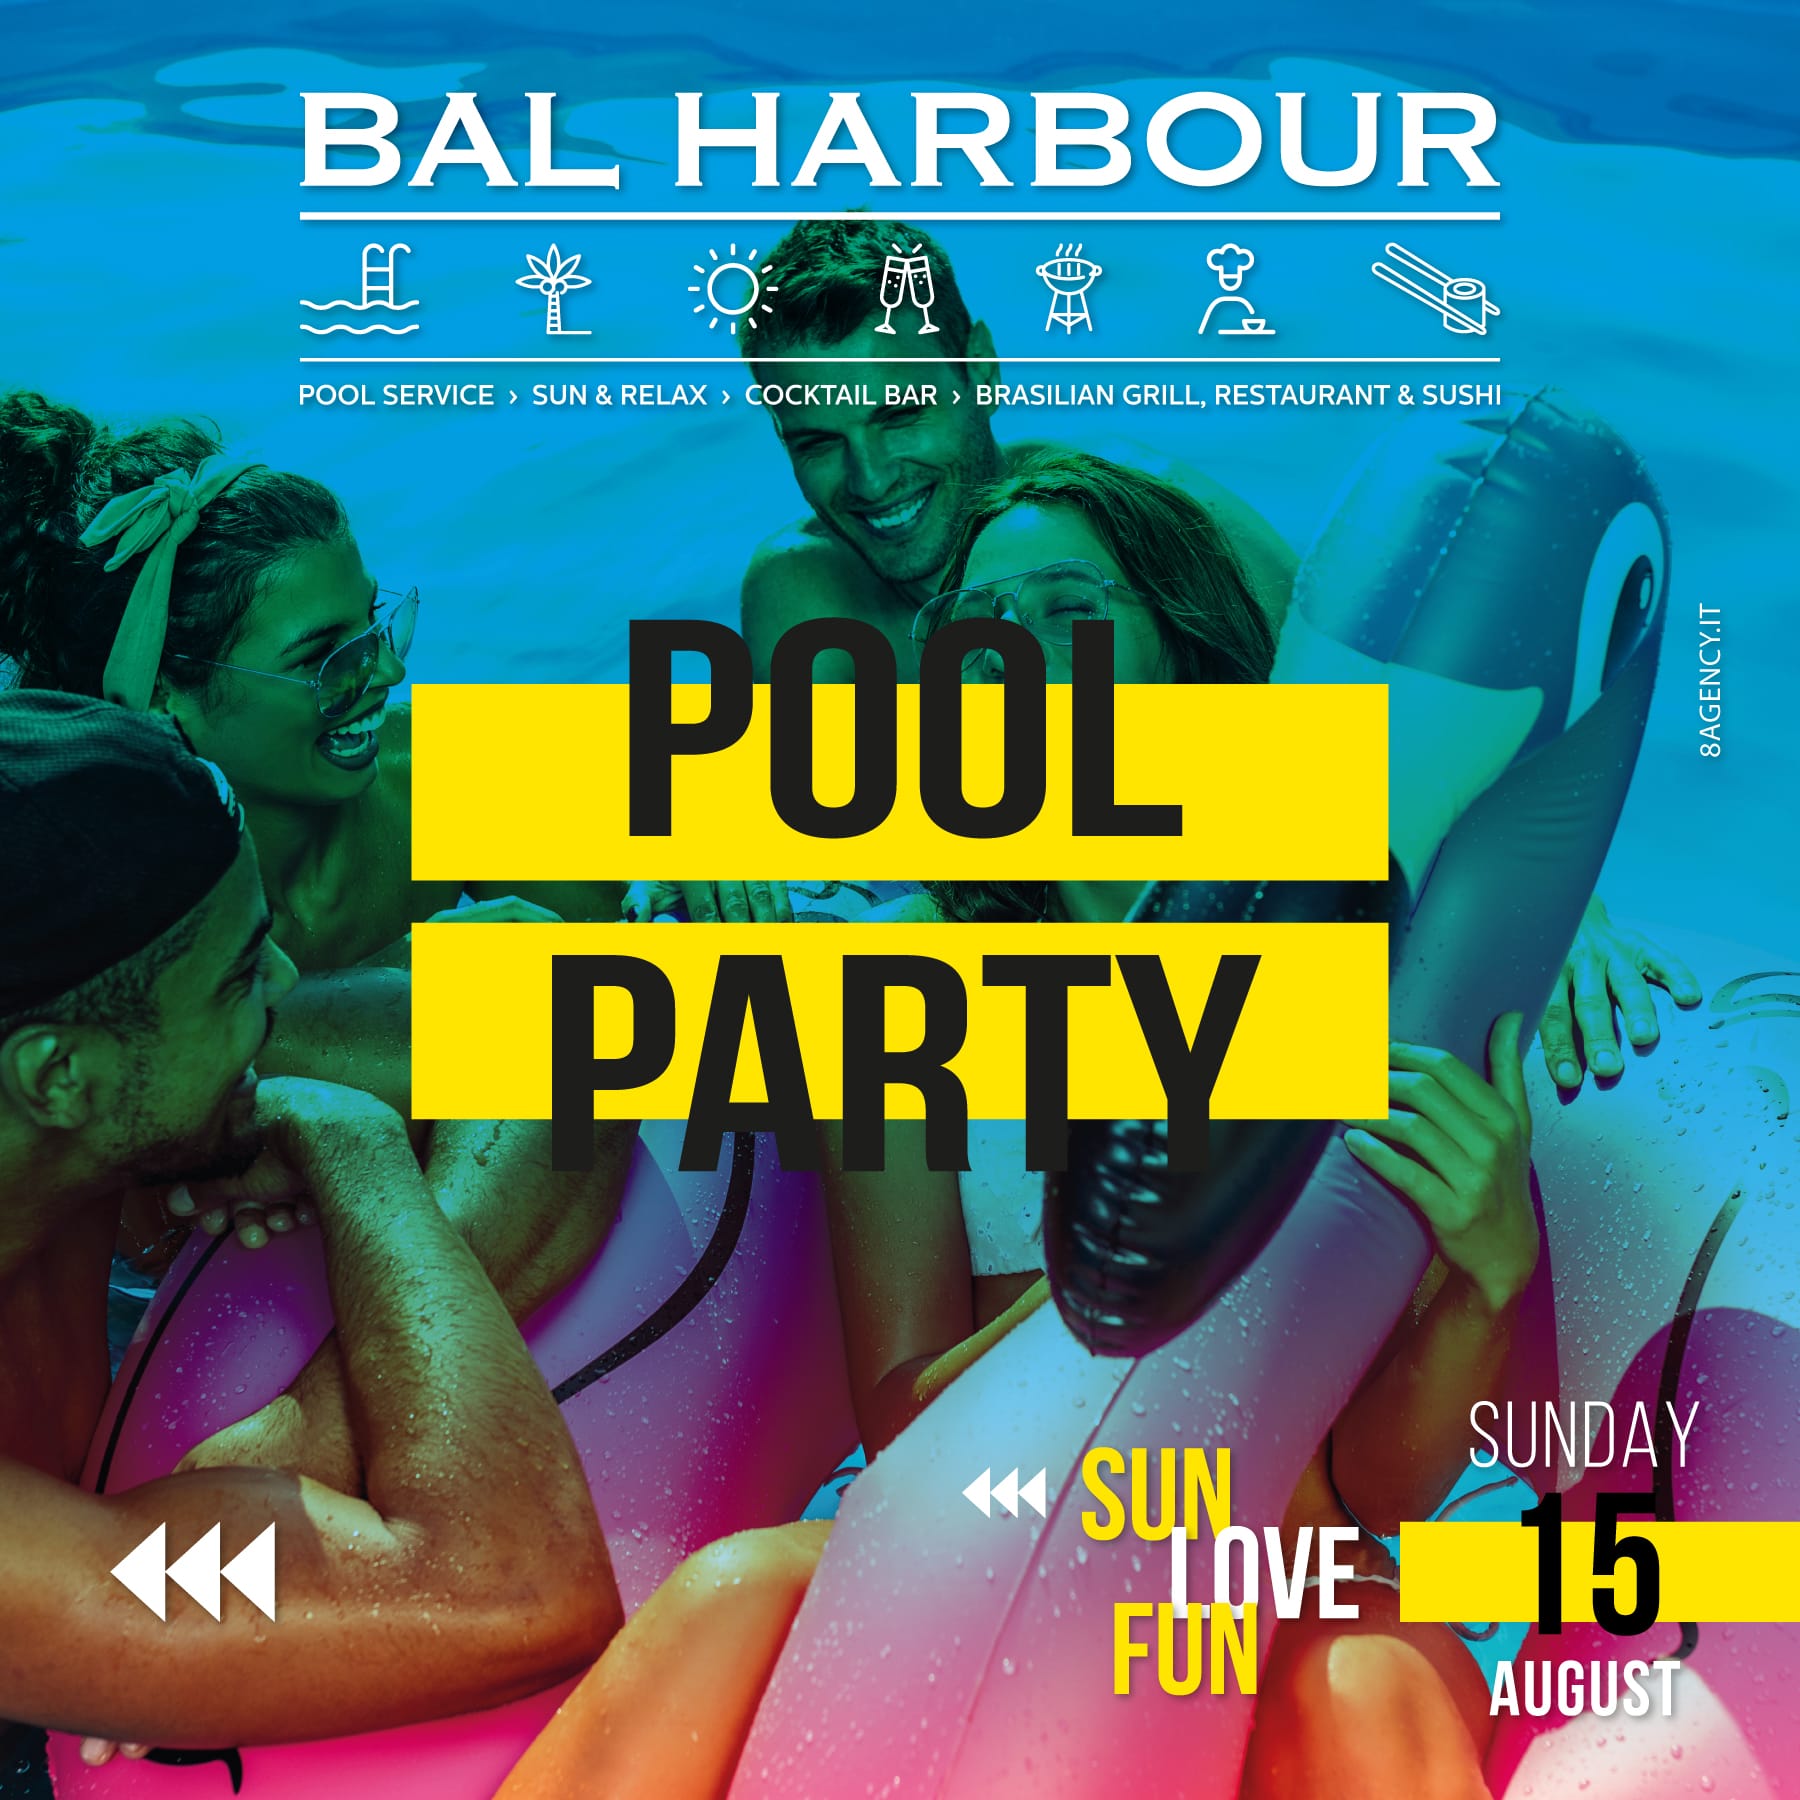 Pool party Ferragosto 2021 - Domenica 15 agosto Feste in Piscina San Teodoro Bal Harbour